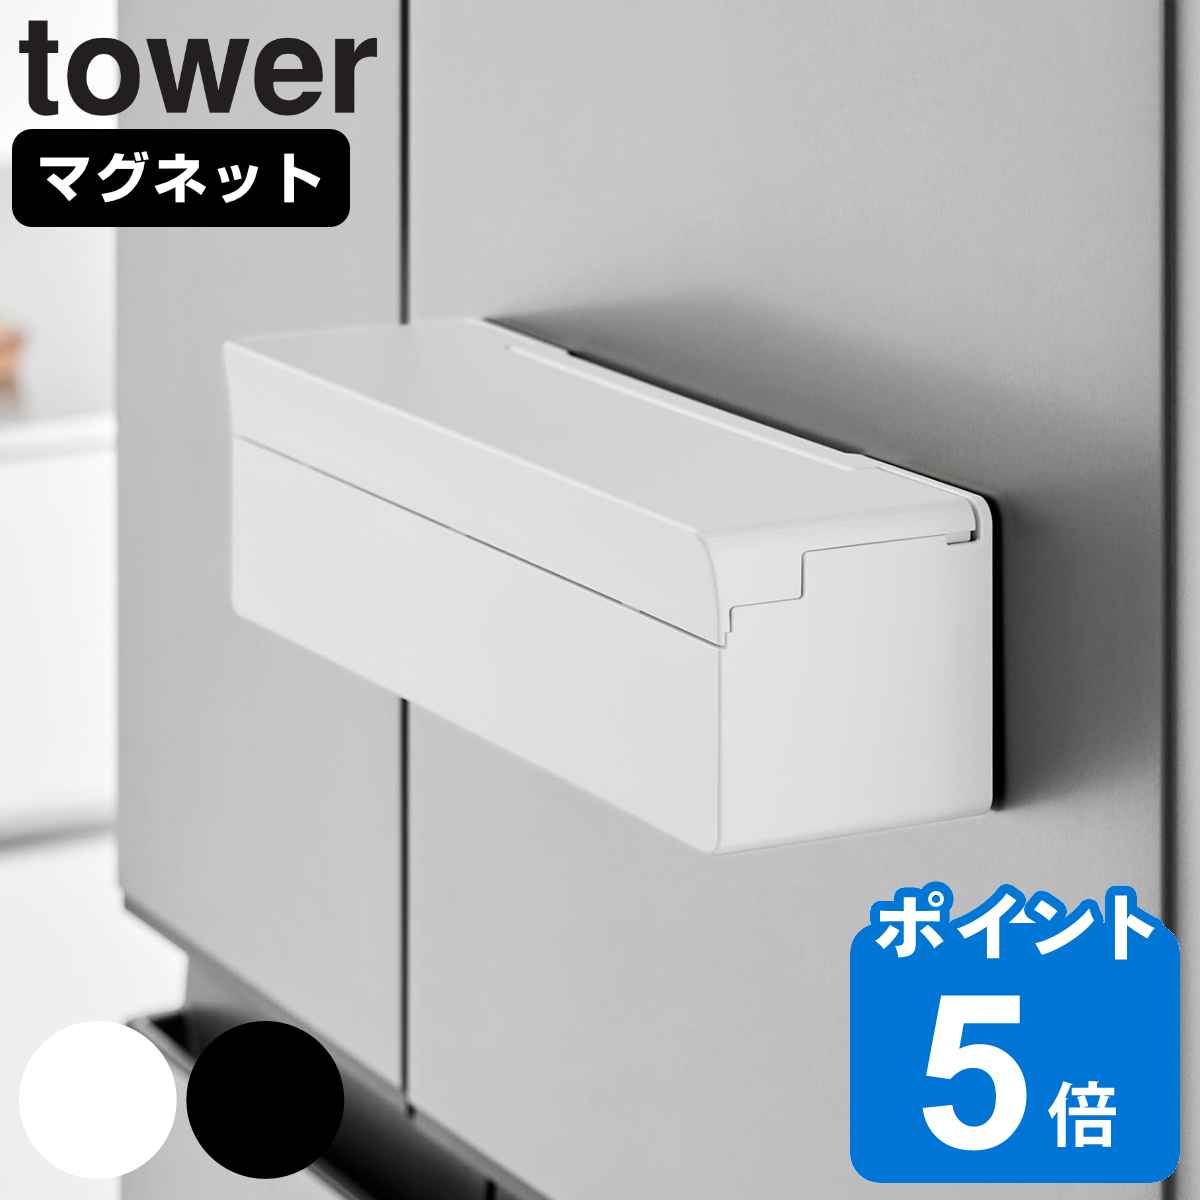 山崎実業 tower マグネットまな板シートケース タワー